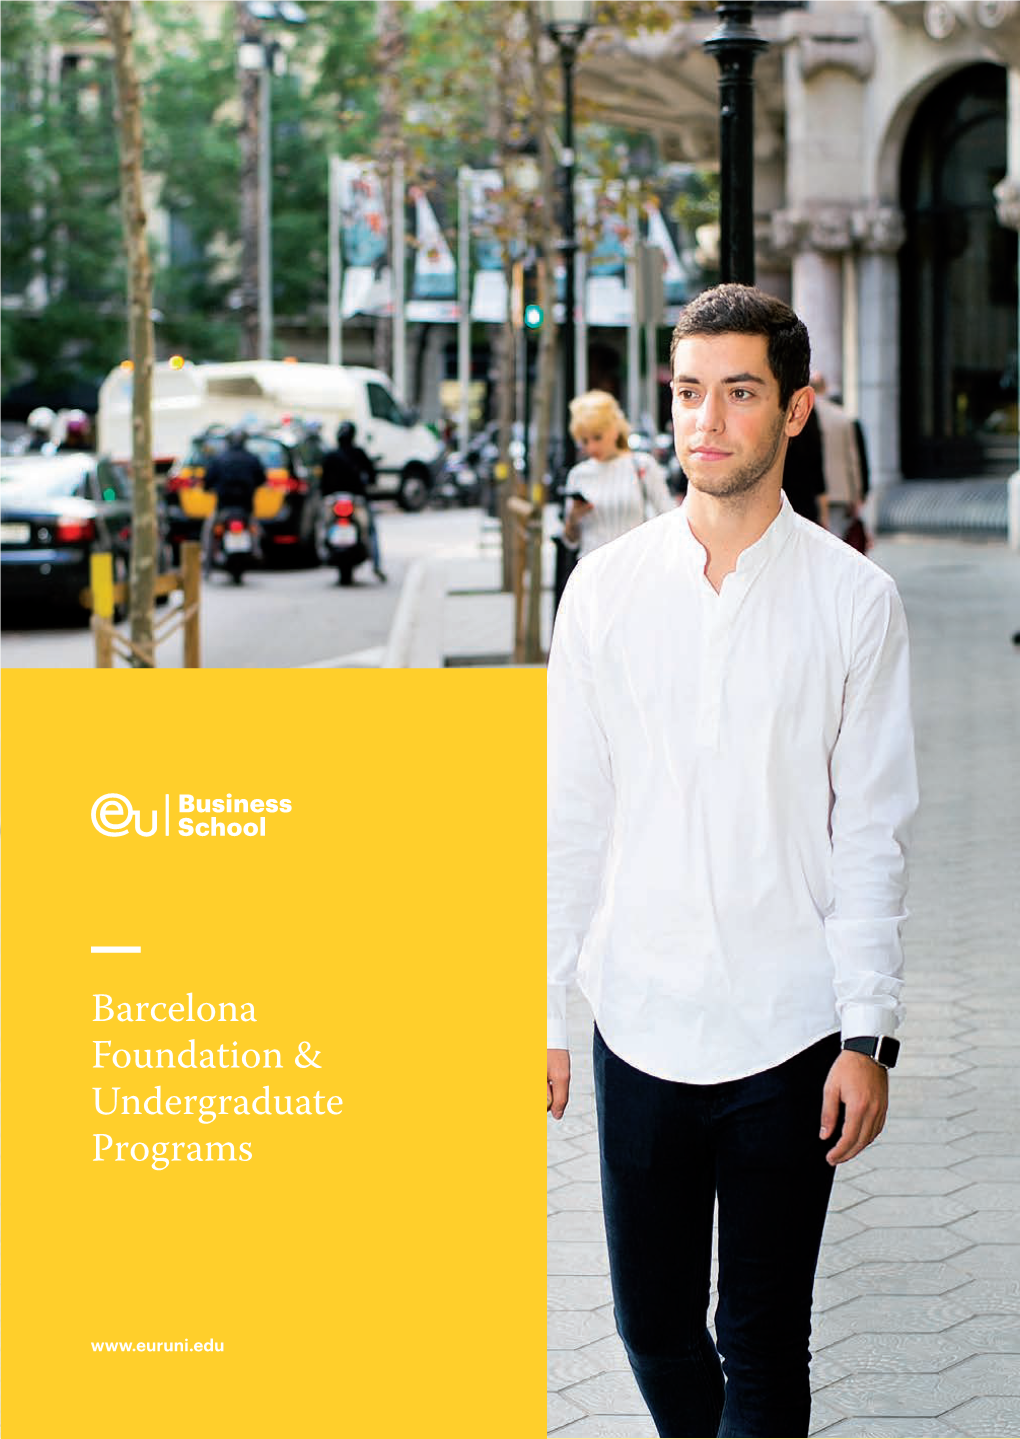 Barcelona Foundation & Undergraduate Programs